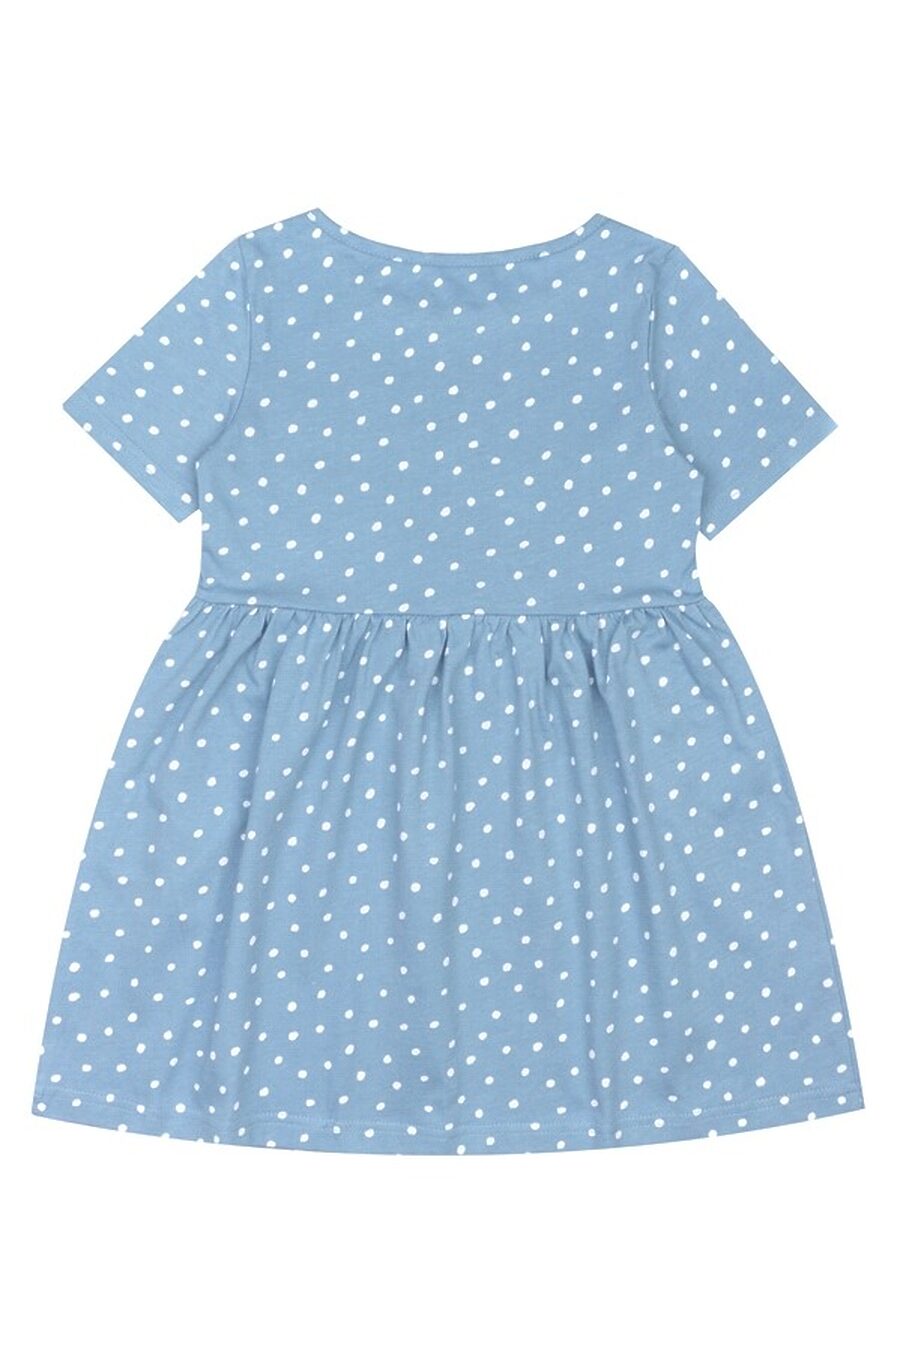 Платье для девочек АПРЕЛЬ 785465 купить оптом от производителя. Совместная покупка детской одежды в OptMoyo